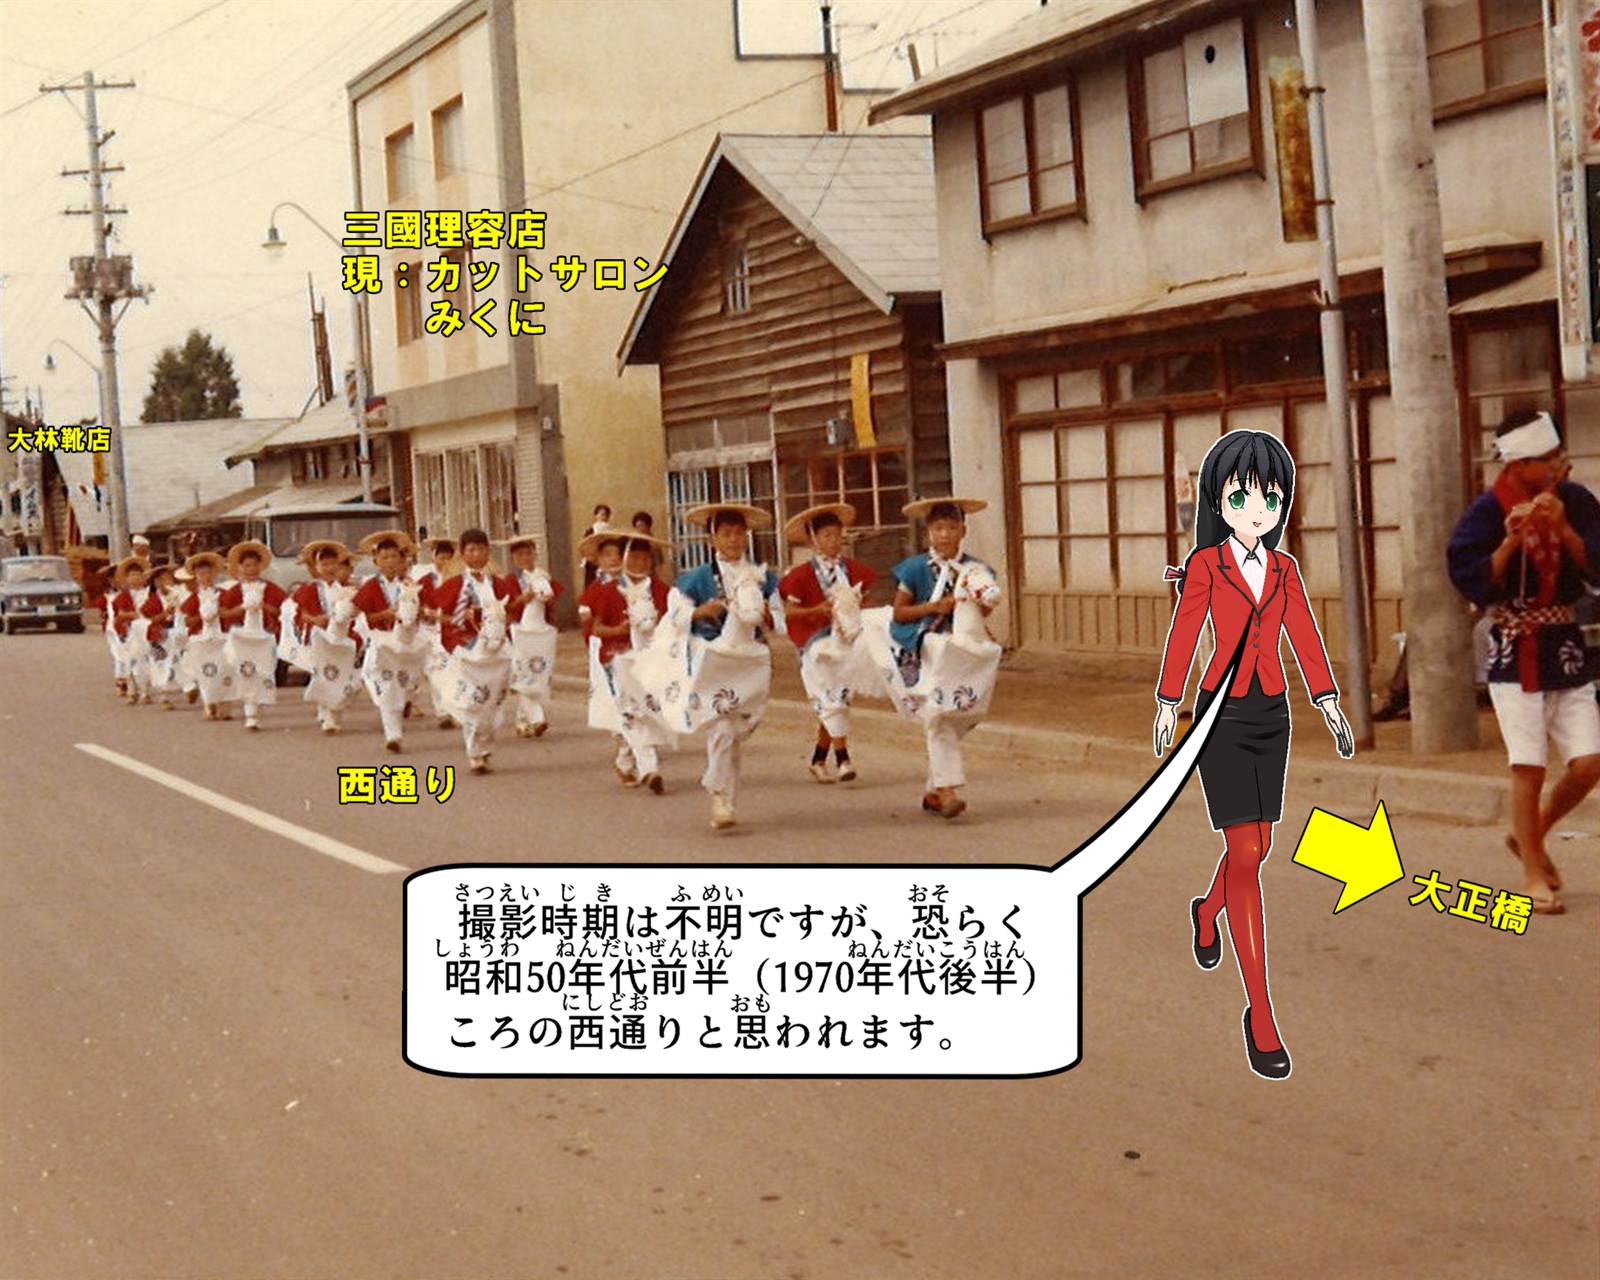 昭和50年代の女満別西通りを練り歩く女満別駒踊りについて説明しているイラスト